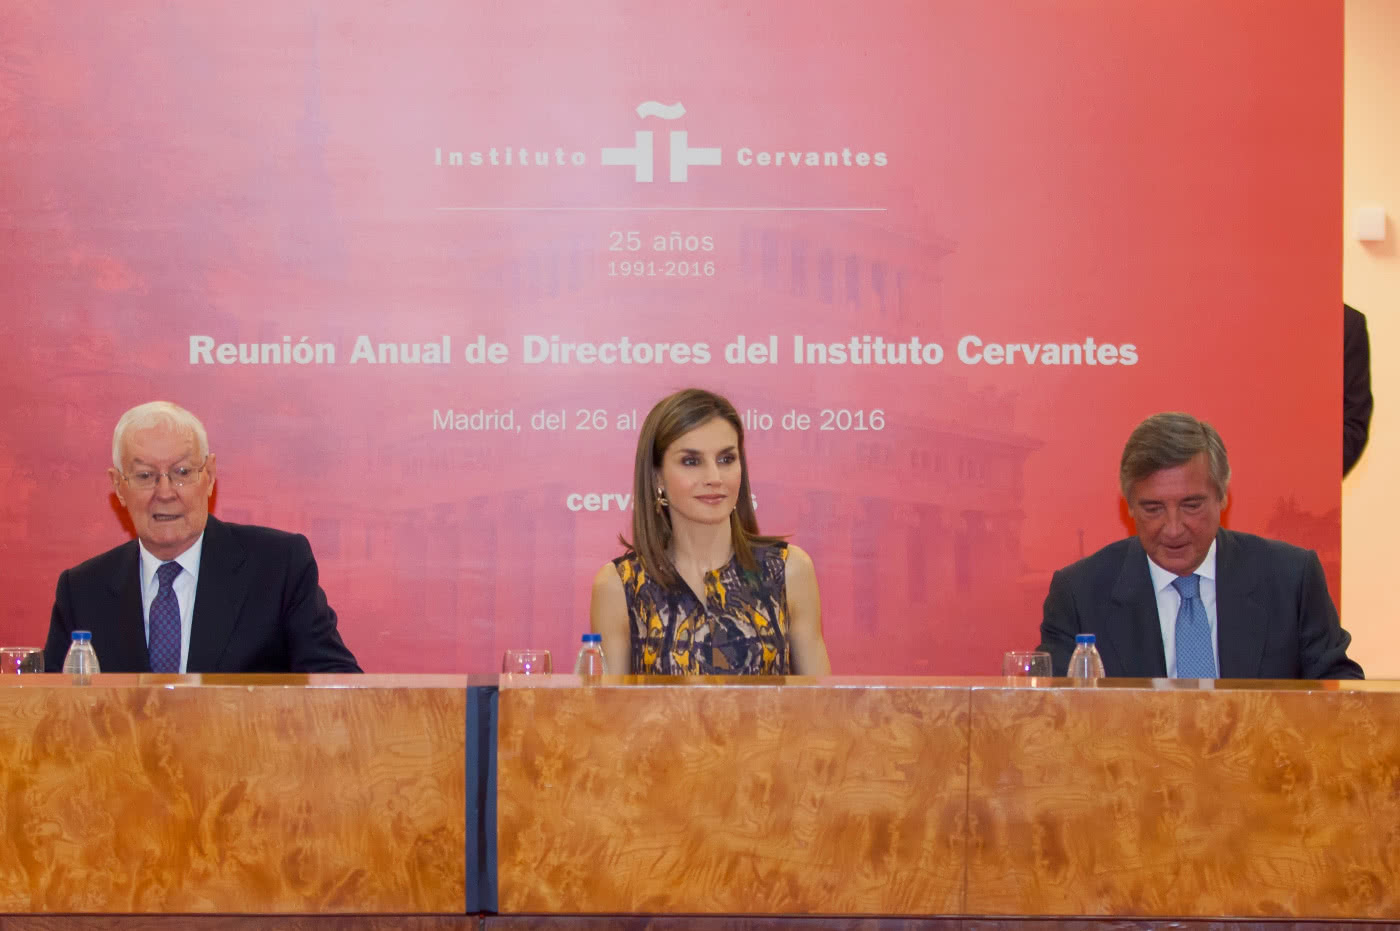 La Reina, durante la sesión de trabajo, junto al director del Instituto Cervantes y el subsecretario de Asuntos Exteriores y de Cooperación. © Instituto Cervantes / Juanjo del Río.